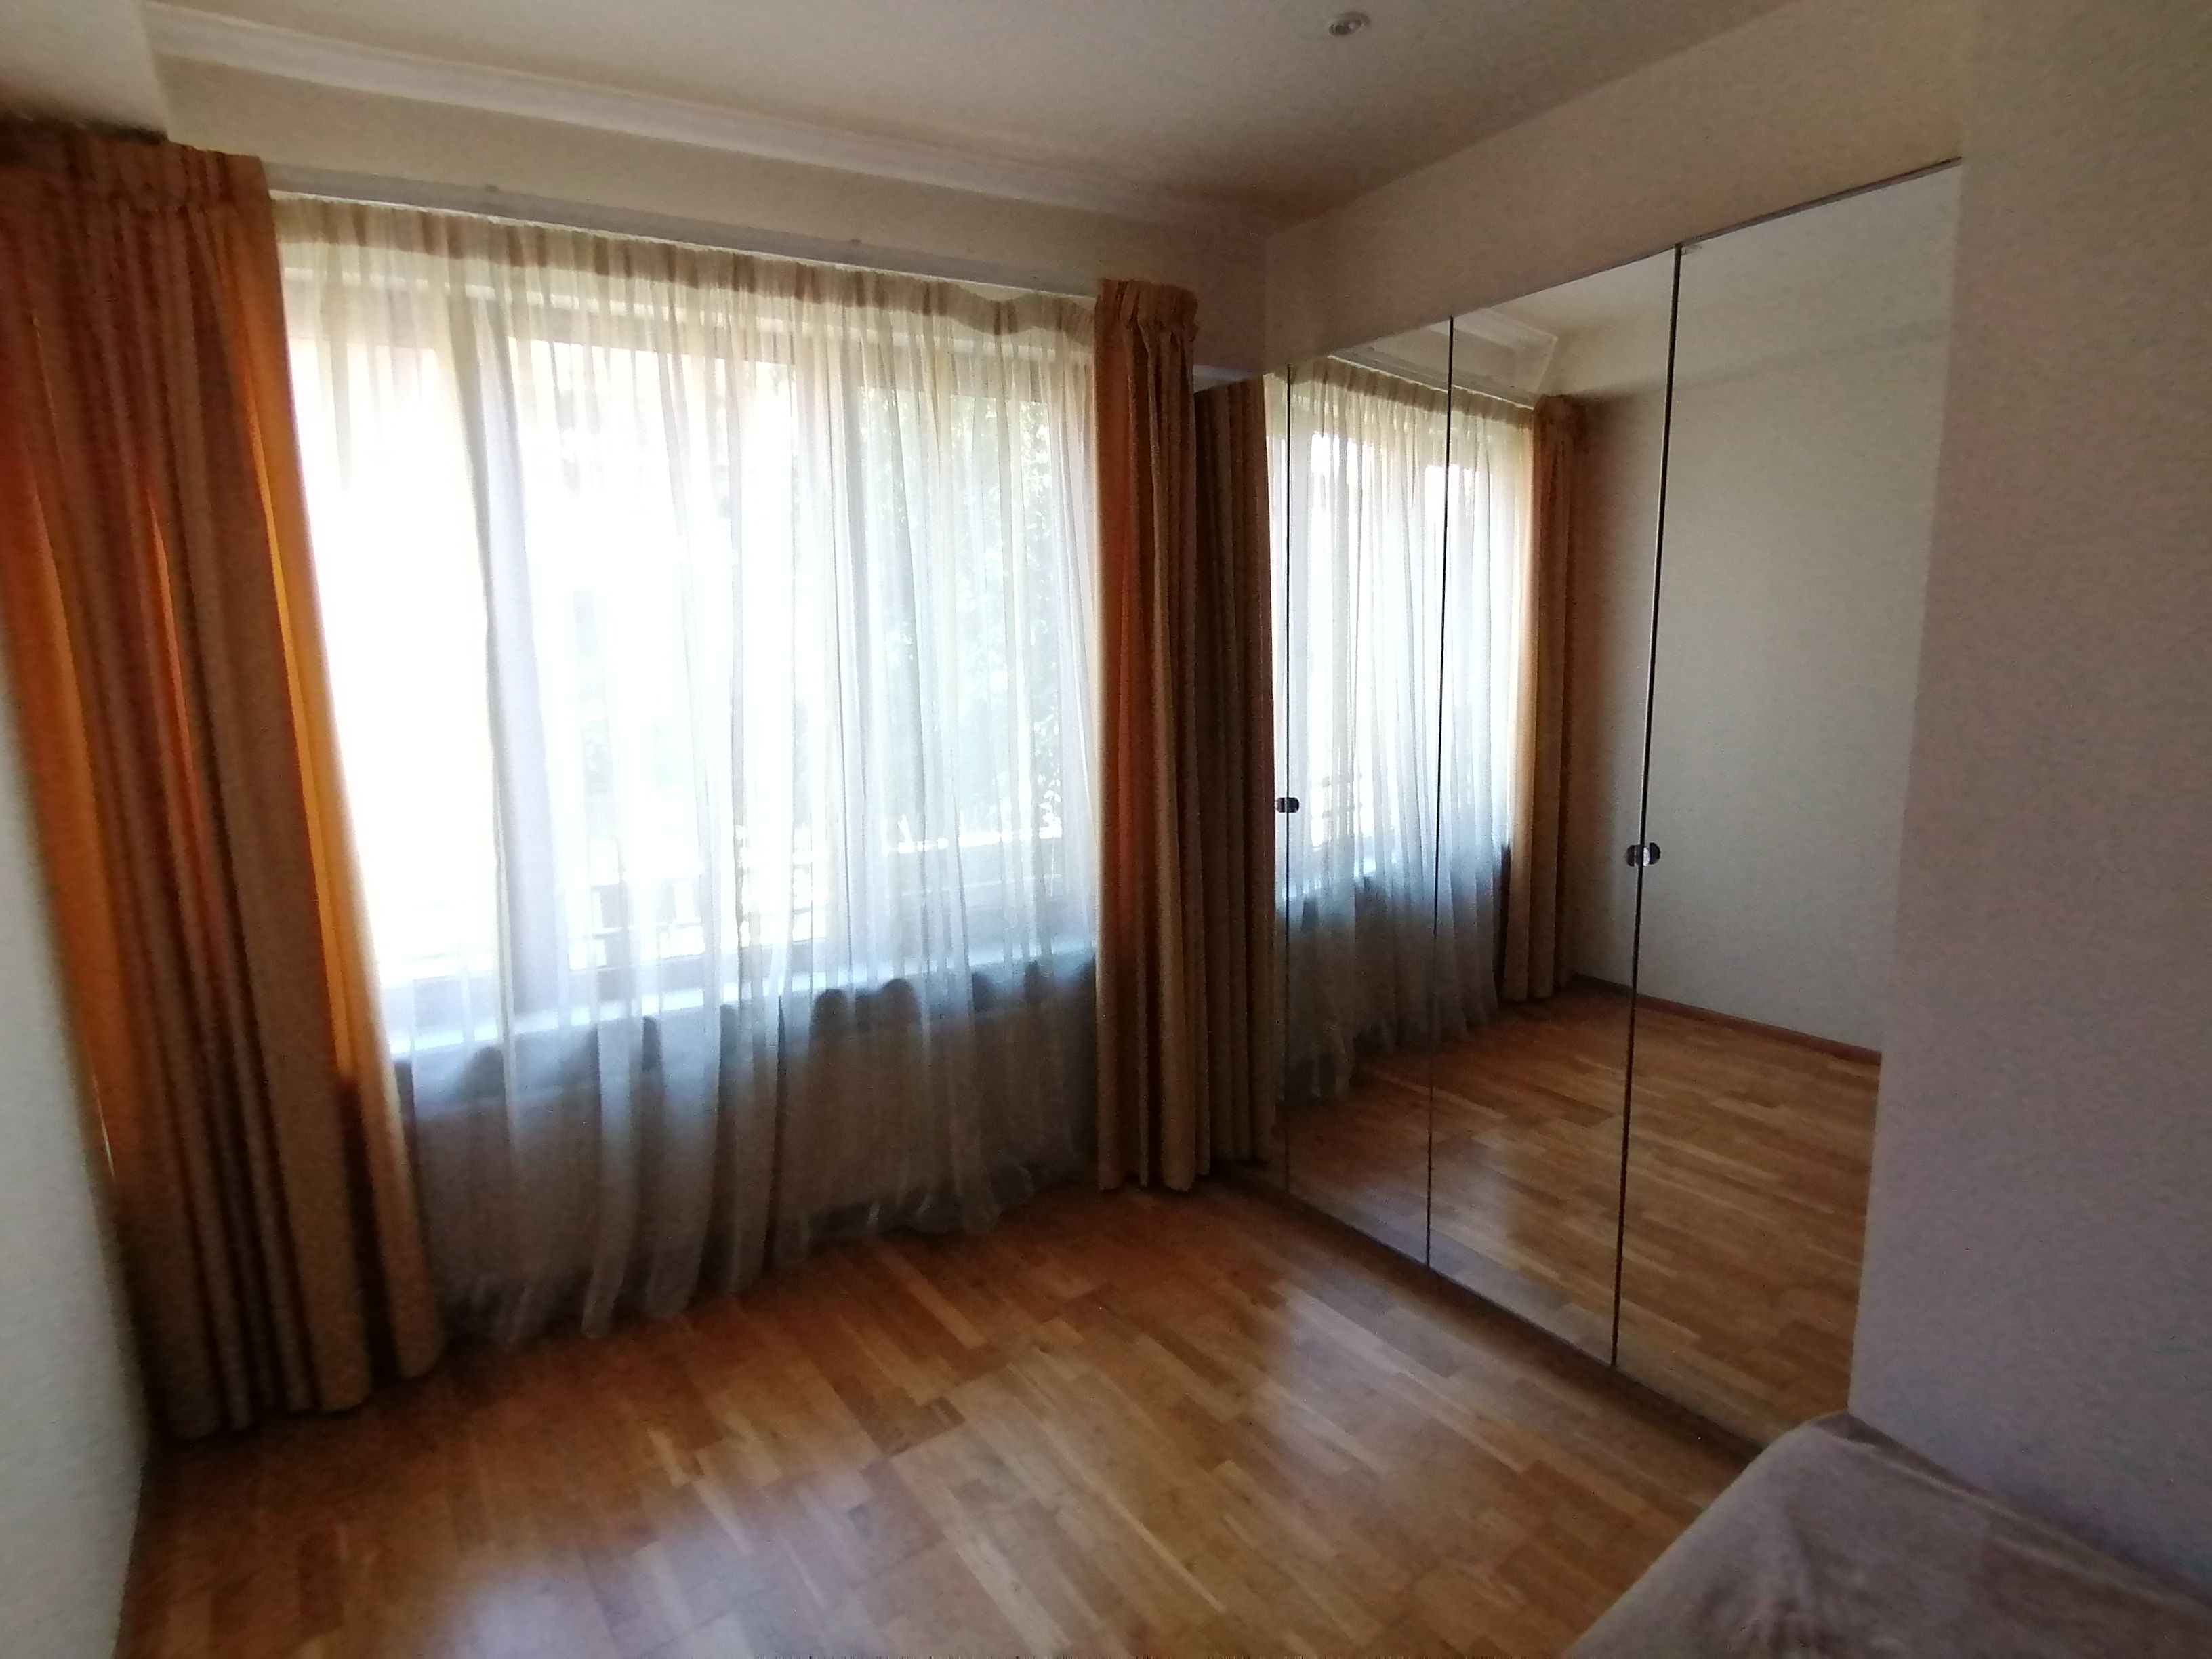 Apartament exclusivist 94,55 mp in zona Floreasca